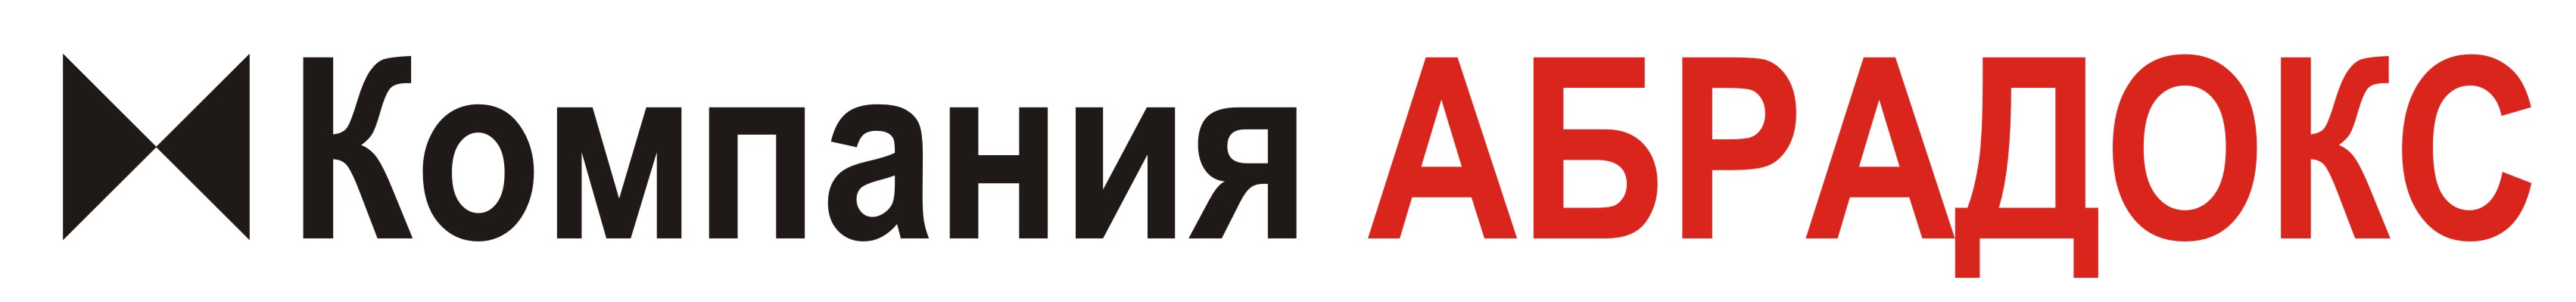 Логотип компании АБРАДОКС -2 